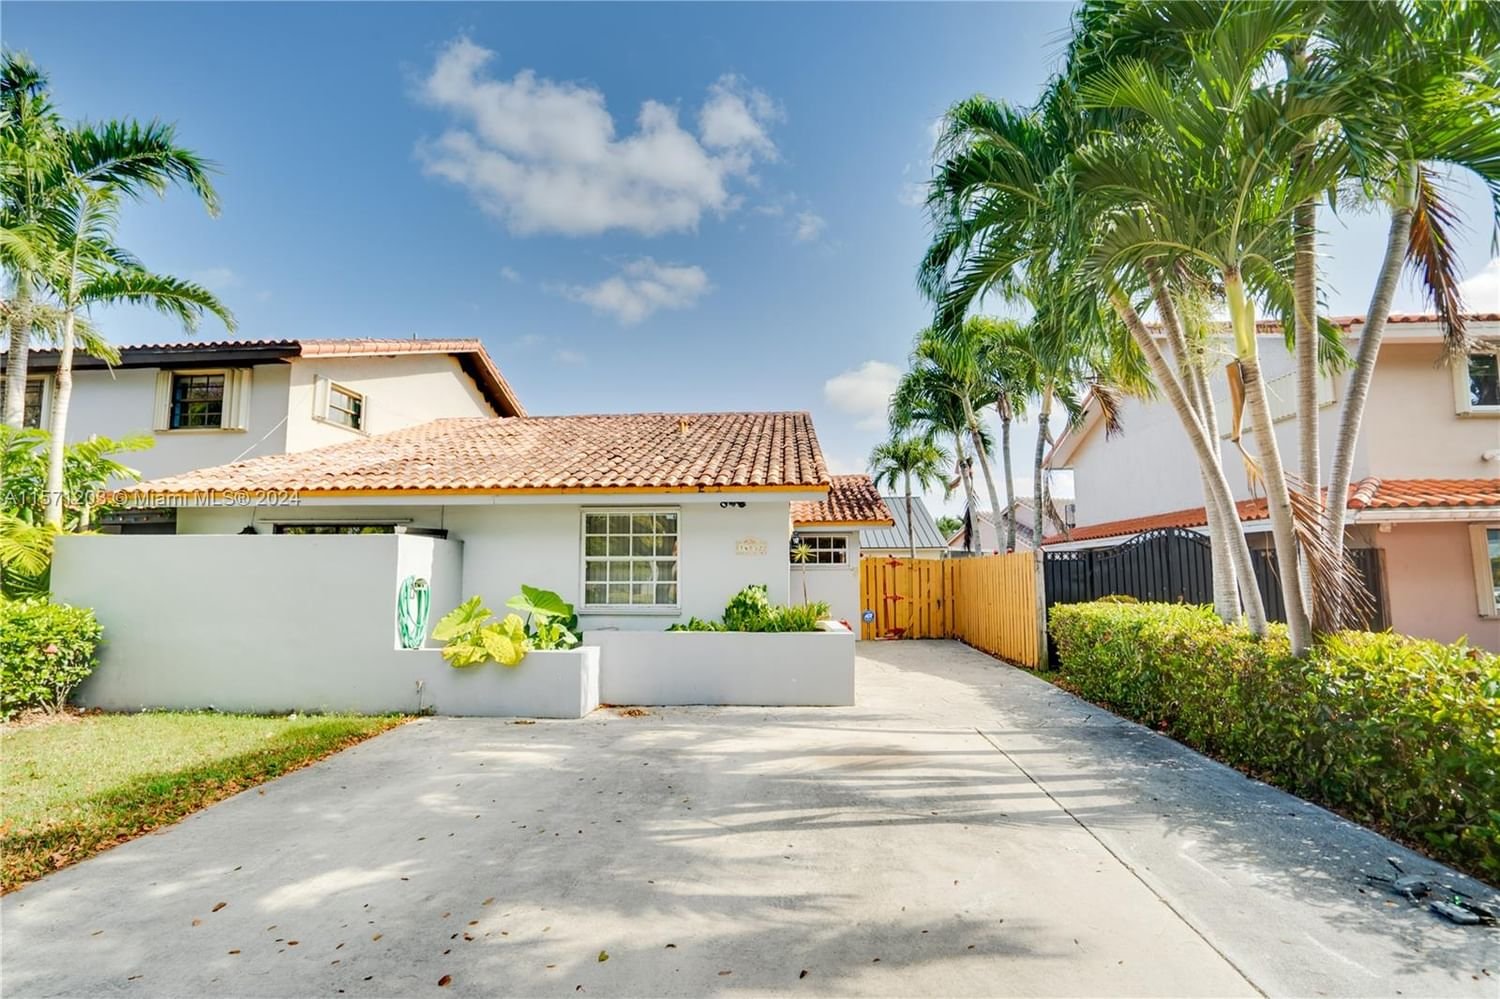 Real estate property located at 14832 80th St #14832, Miami-Dade County, KENDALE TWIN VILLAS CONDO, Miami, FL